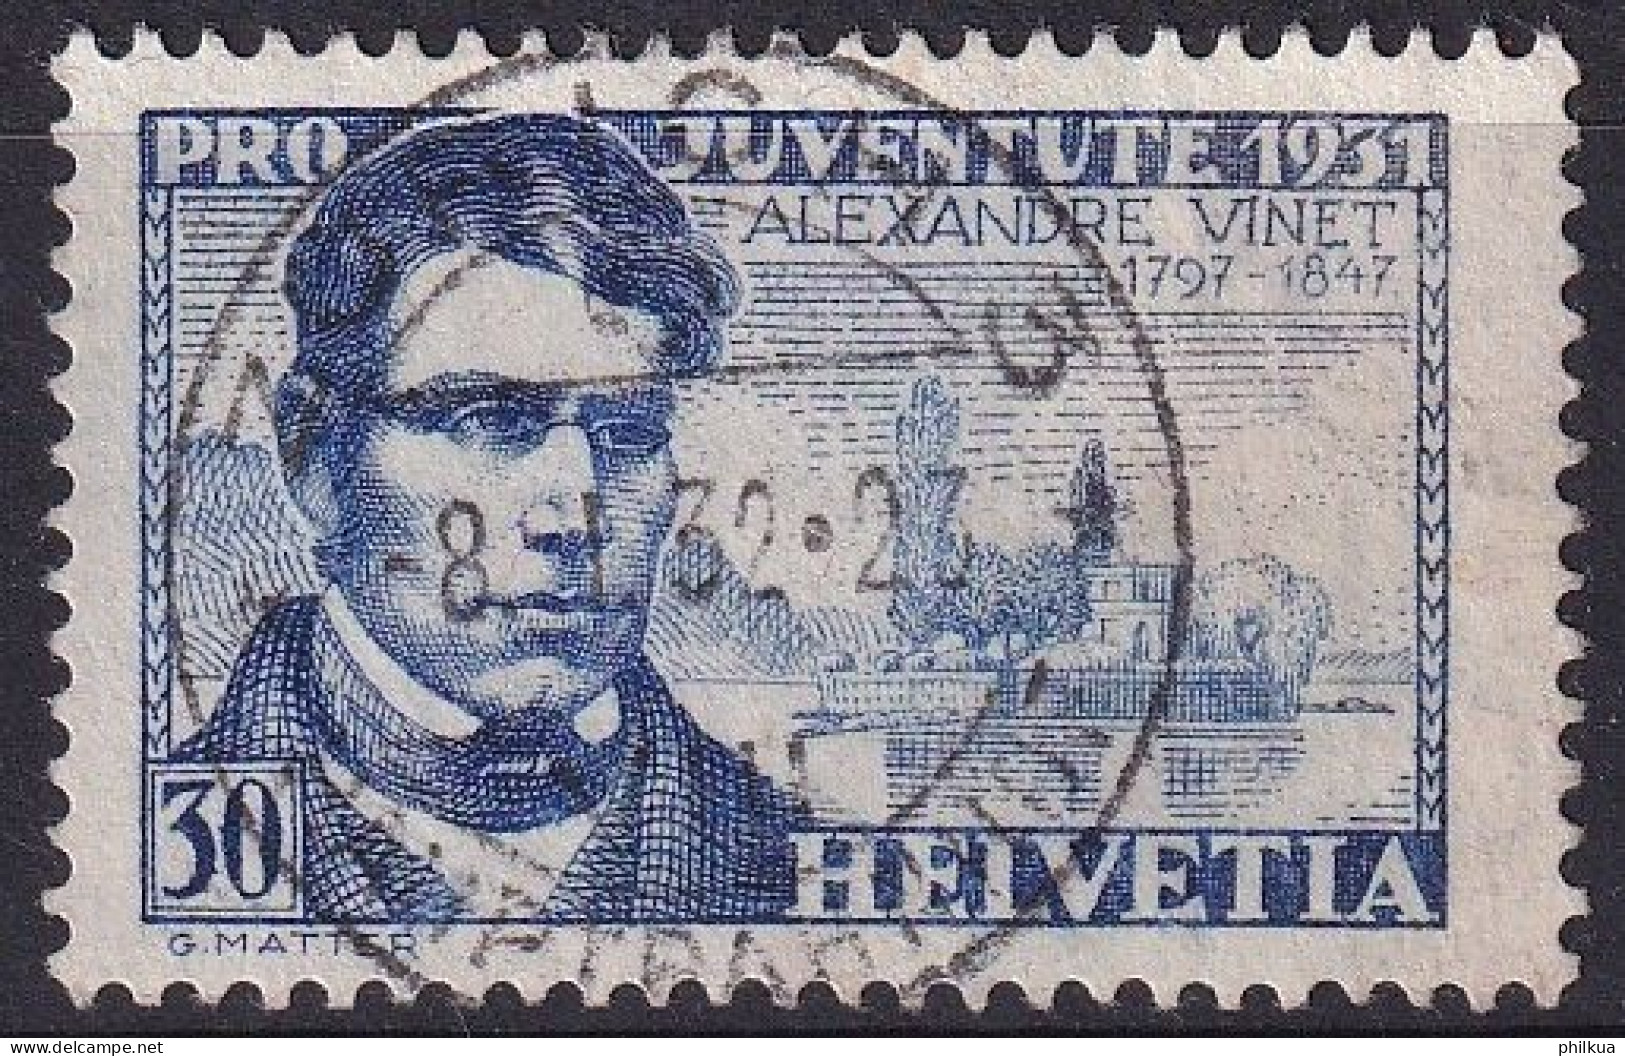 1931, 1. Dez. Pro Juventute Alexandre Vinet (1797-1847) Theologe Zumst. 60 / MiNr. 249 Mit Stempel ZÜRICH 3 HAUPTBAHNHOF - Used Stamps